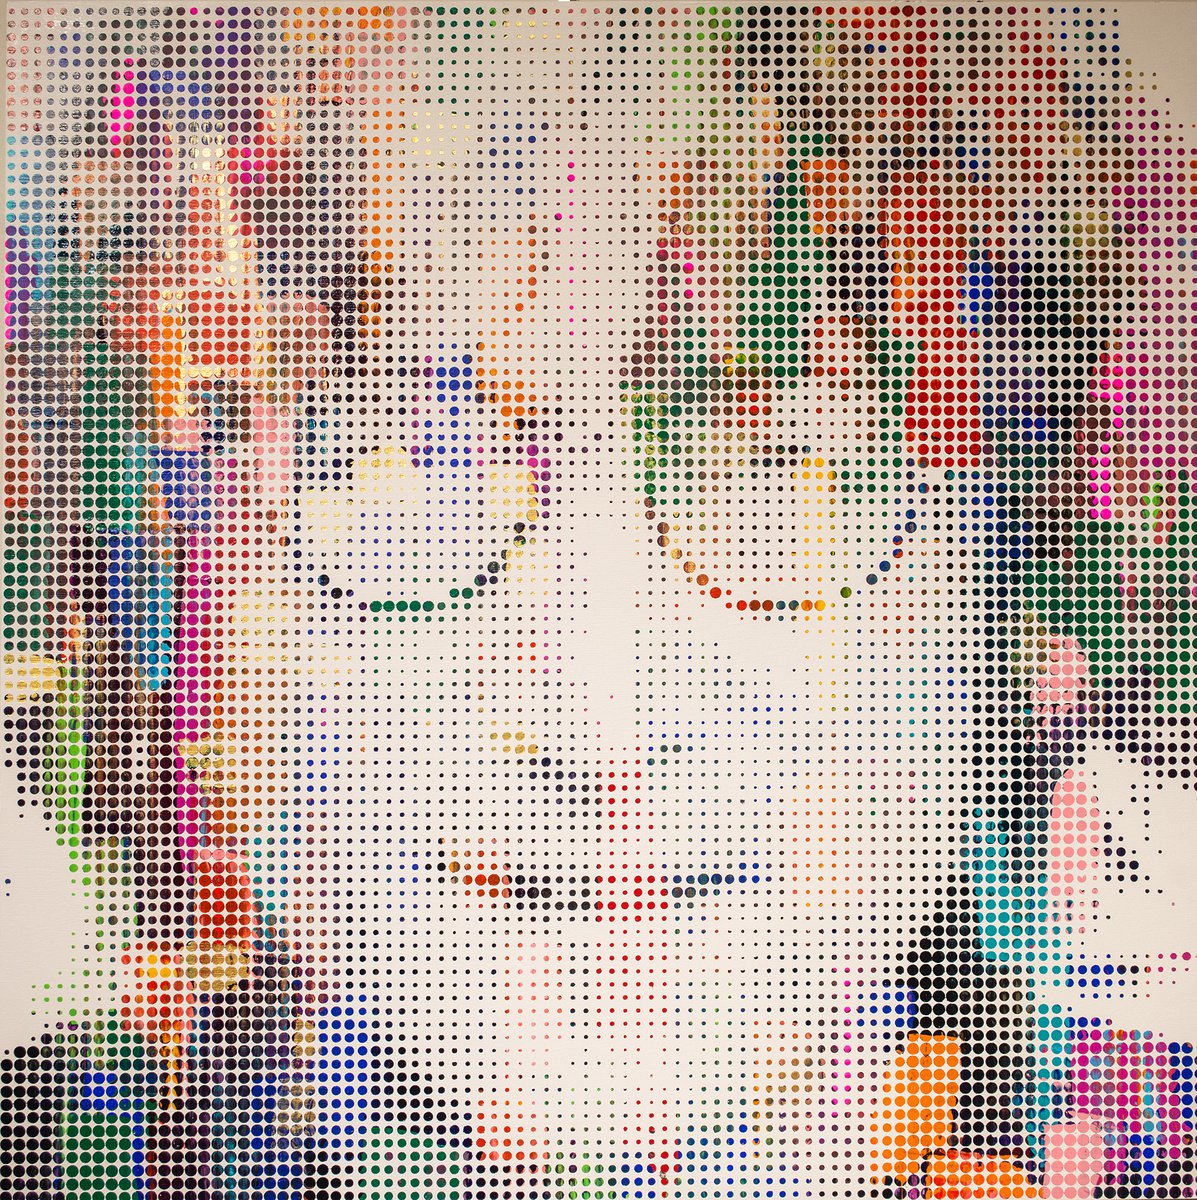 J. Lennon III by Sean Christopher Ward